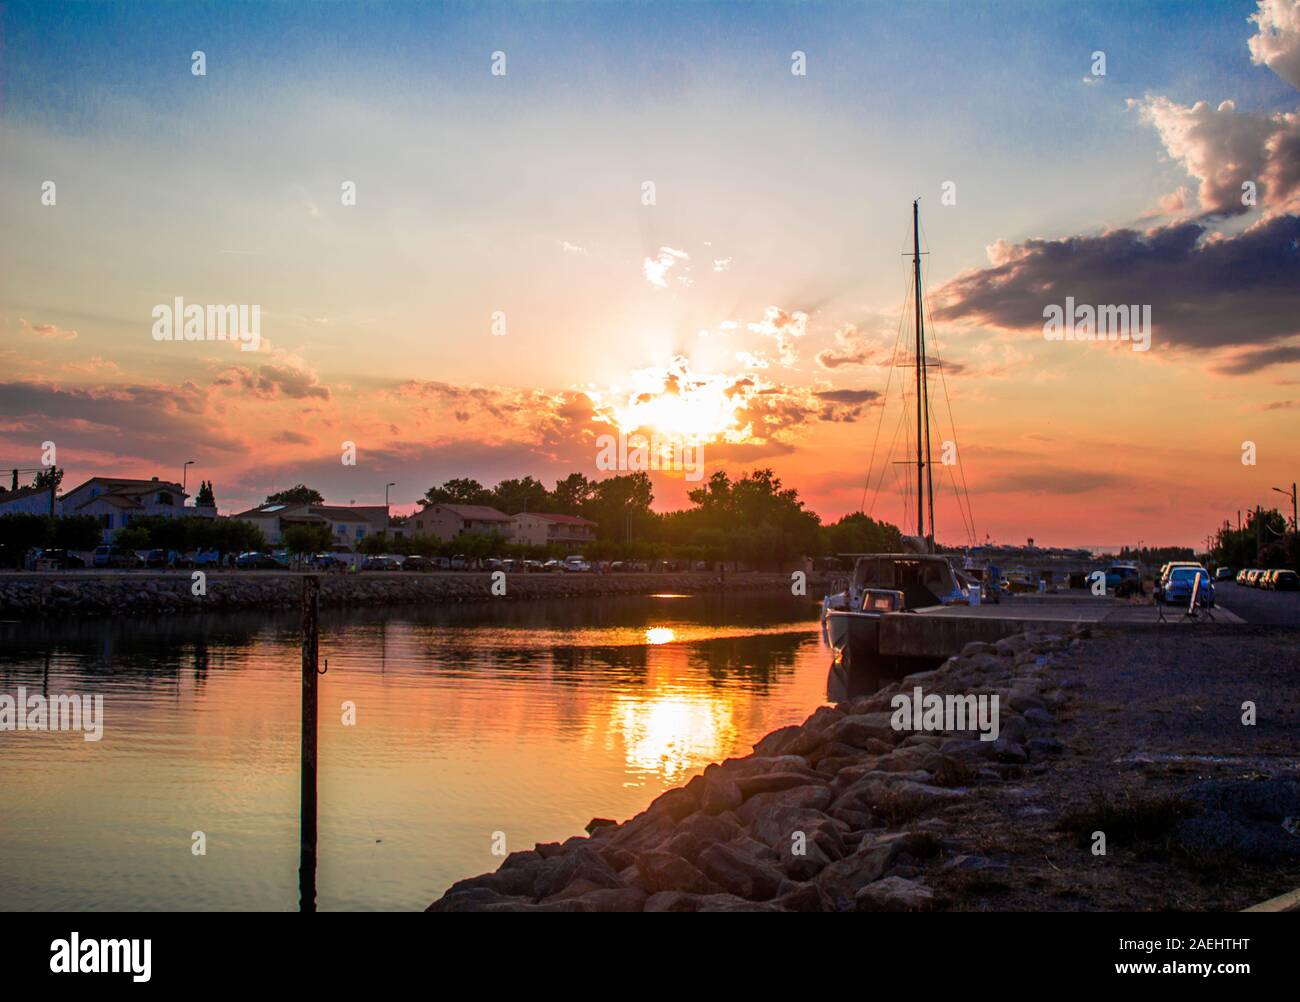 Vista di un porto, case presso la riva del fiume al tramonto e barche in attesa Foto Stock